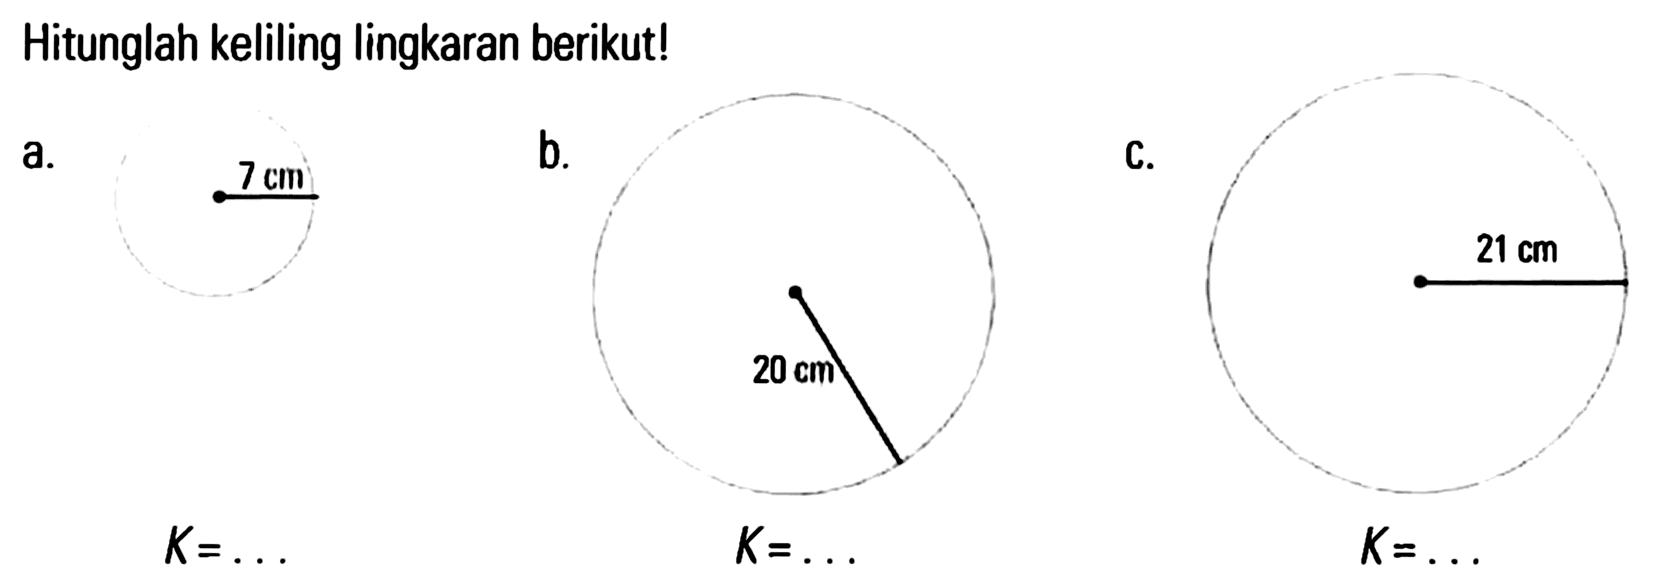 Hitunglah keliling lingkaran berikut! a. 7 cm b. 20 cm c. 21 cm K = ... K = ... K = ...